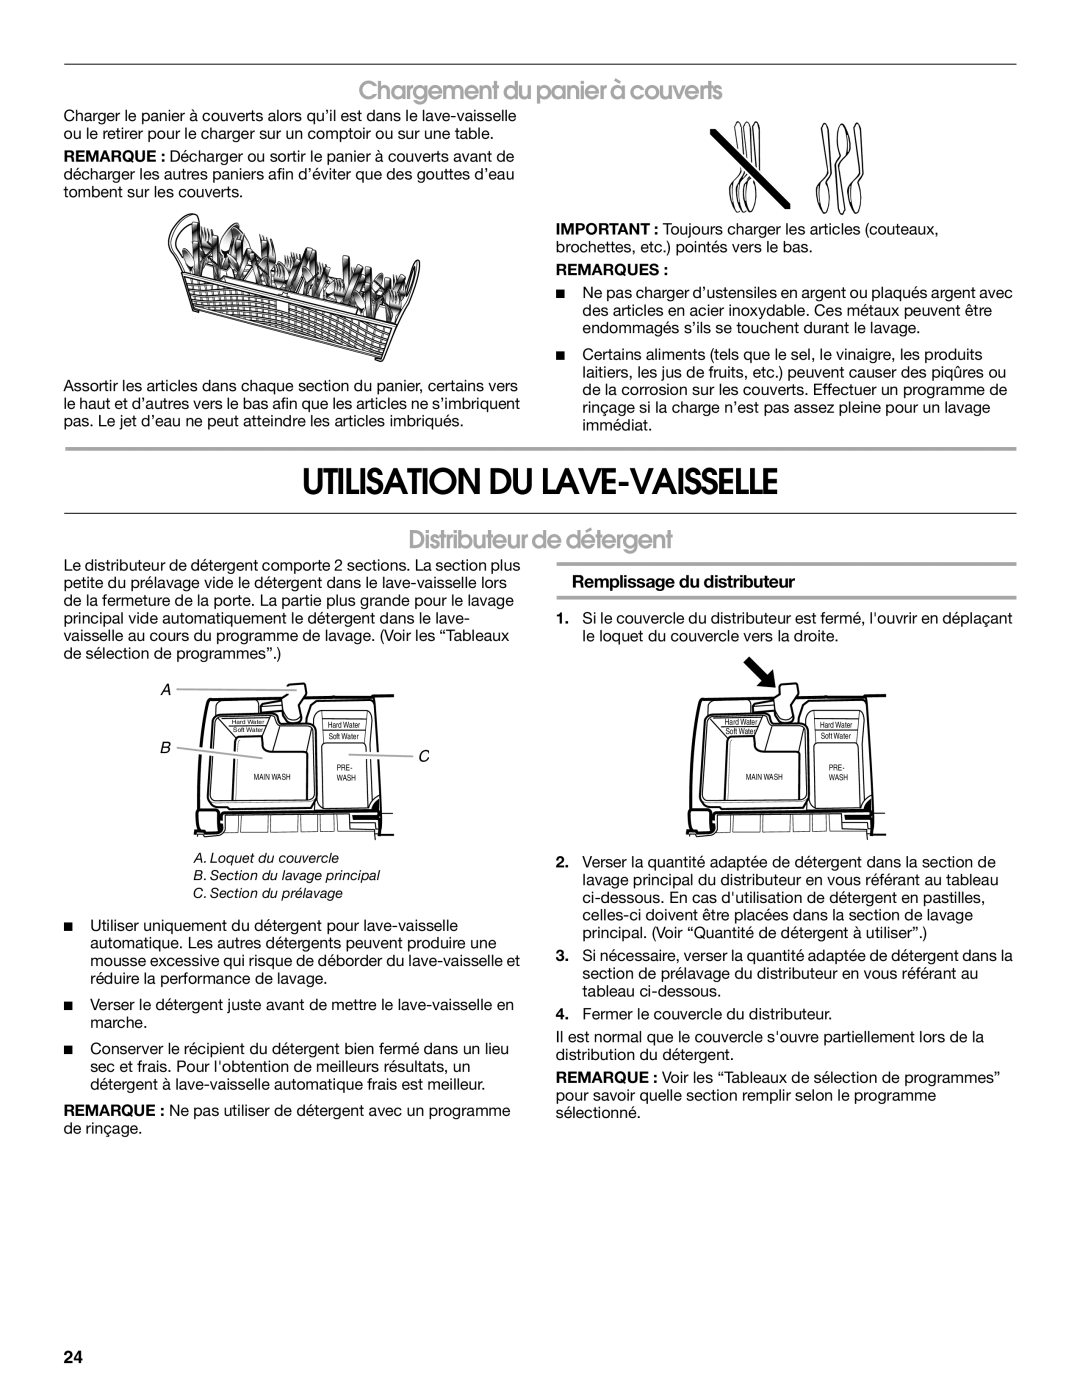 Roper RUD8050S manual Utilisation Du Lave-Vaisselle, Chargement du panier à couverts, Distributeur de détergent 